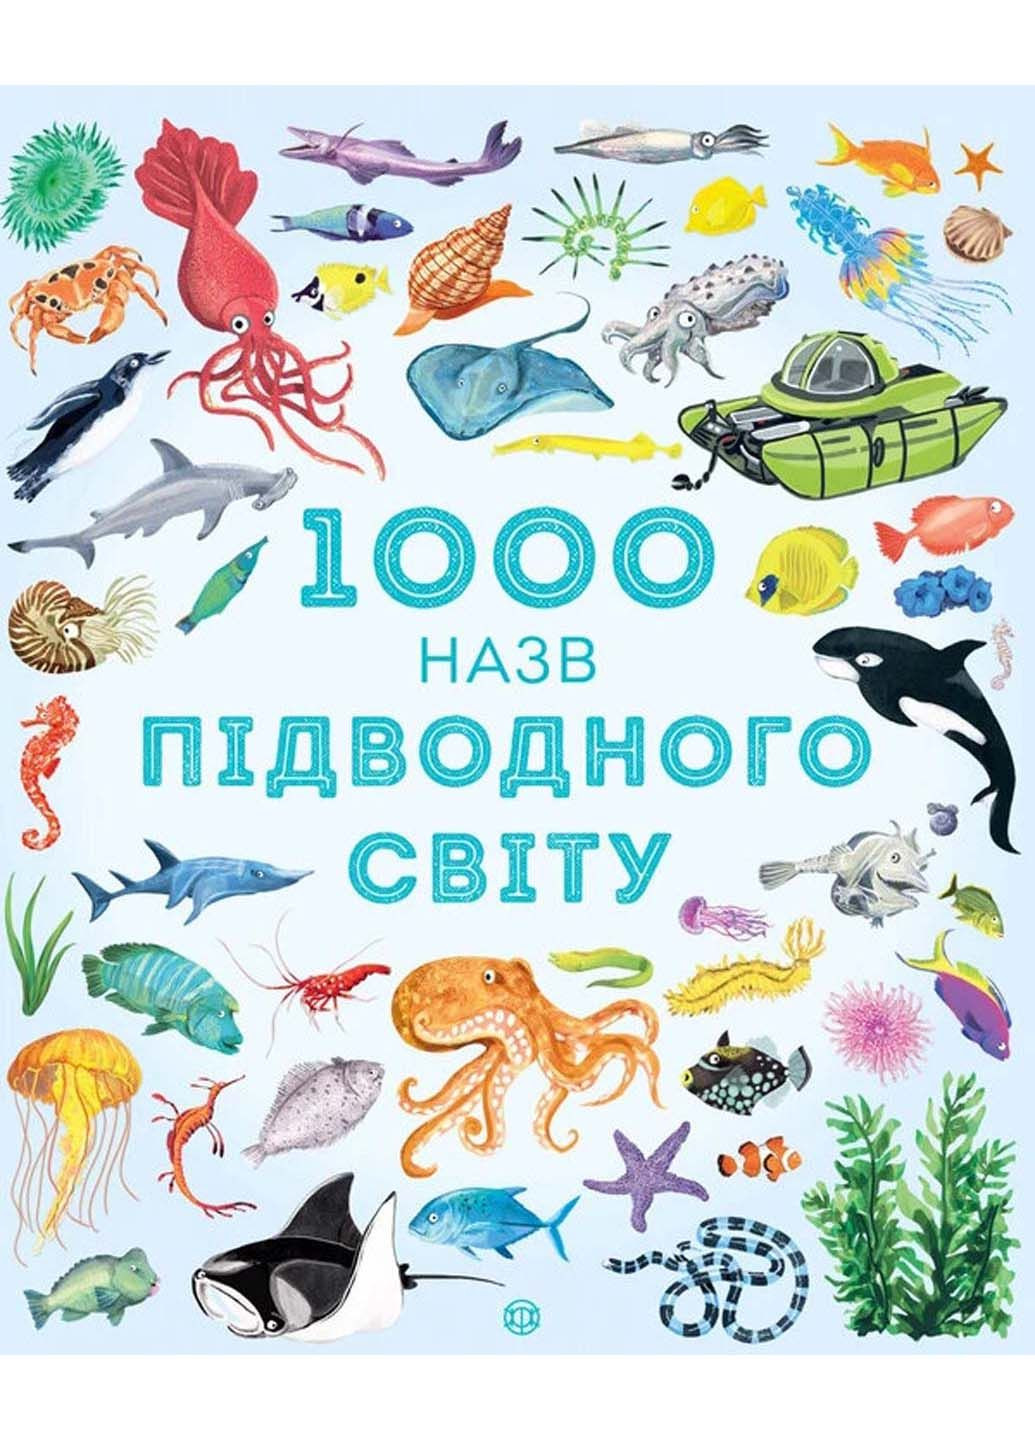 Книга 1000 назв підводного світу 2019р 40 с Жорж (293057984)